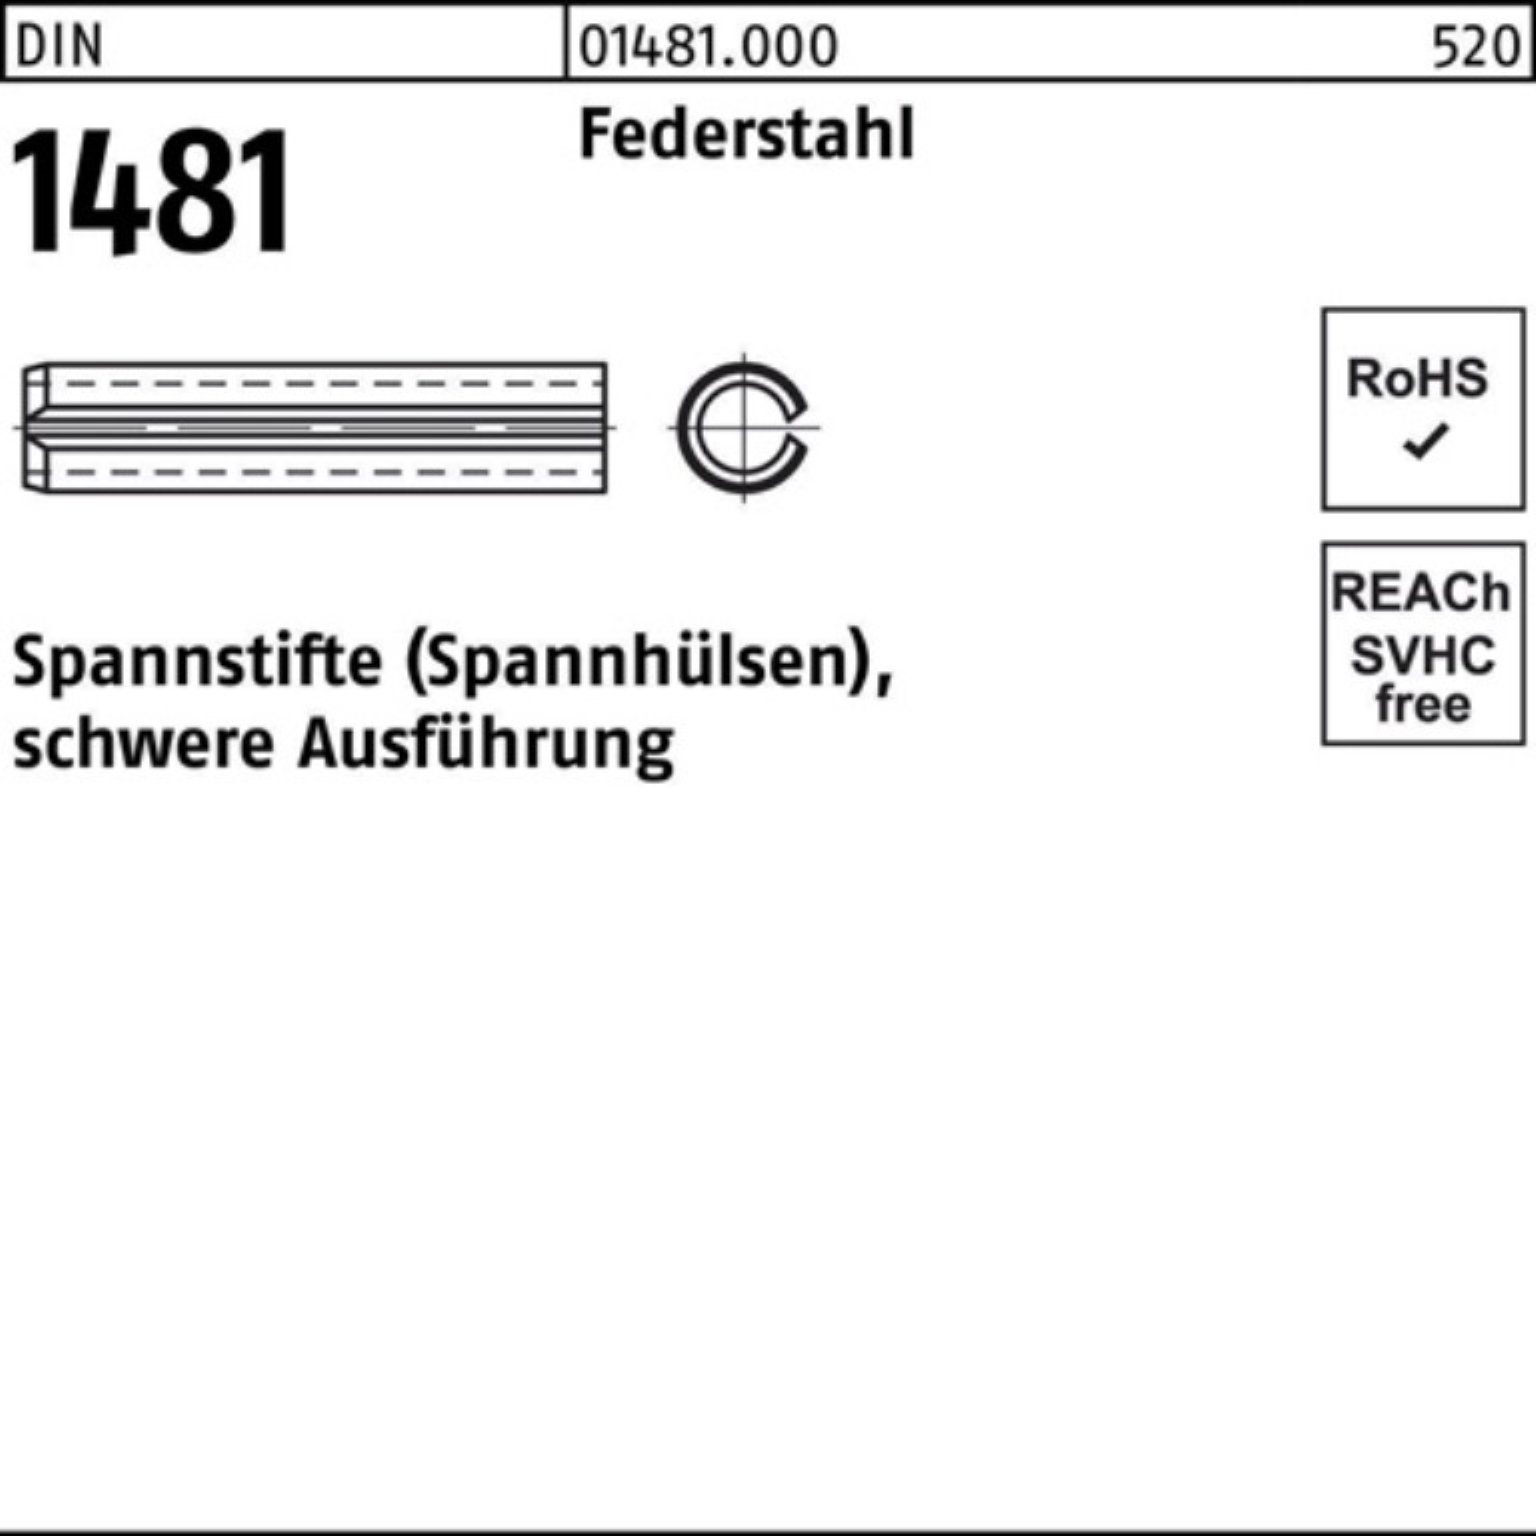 Reyher Spannstift 100er Pack Spannstift DIN 1481 10x 95 Federstahl schwere Ausführung 5